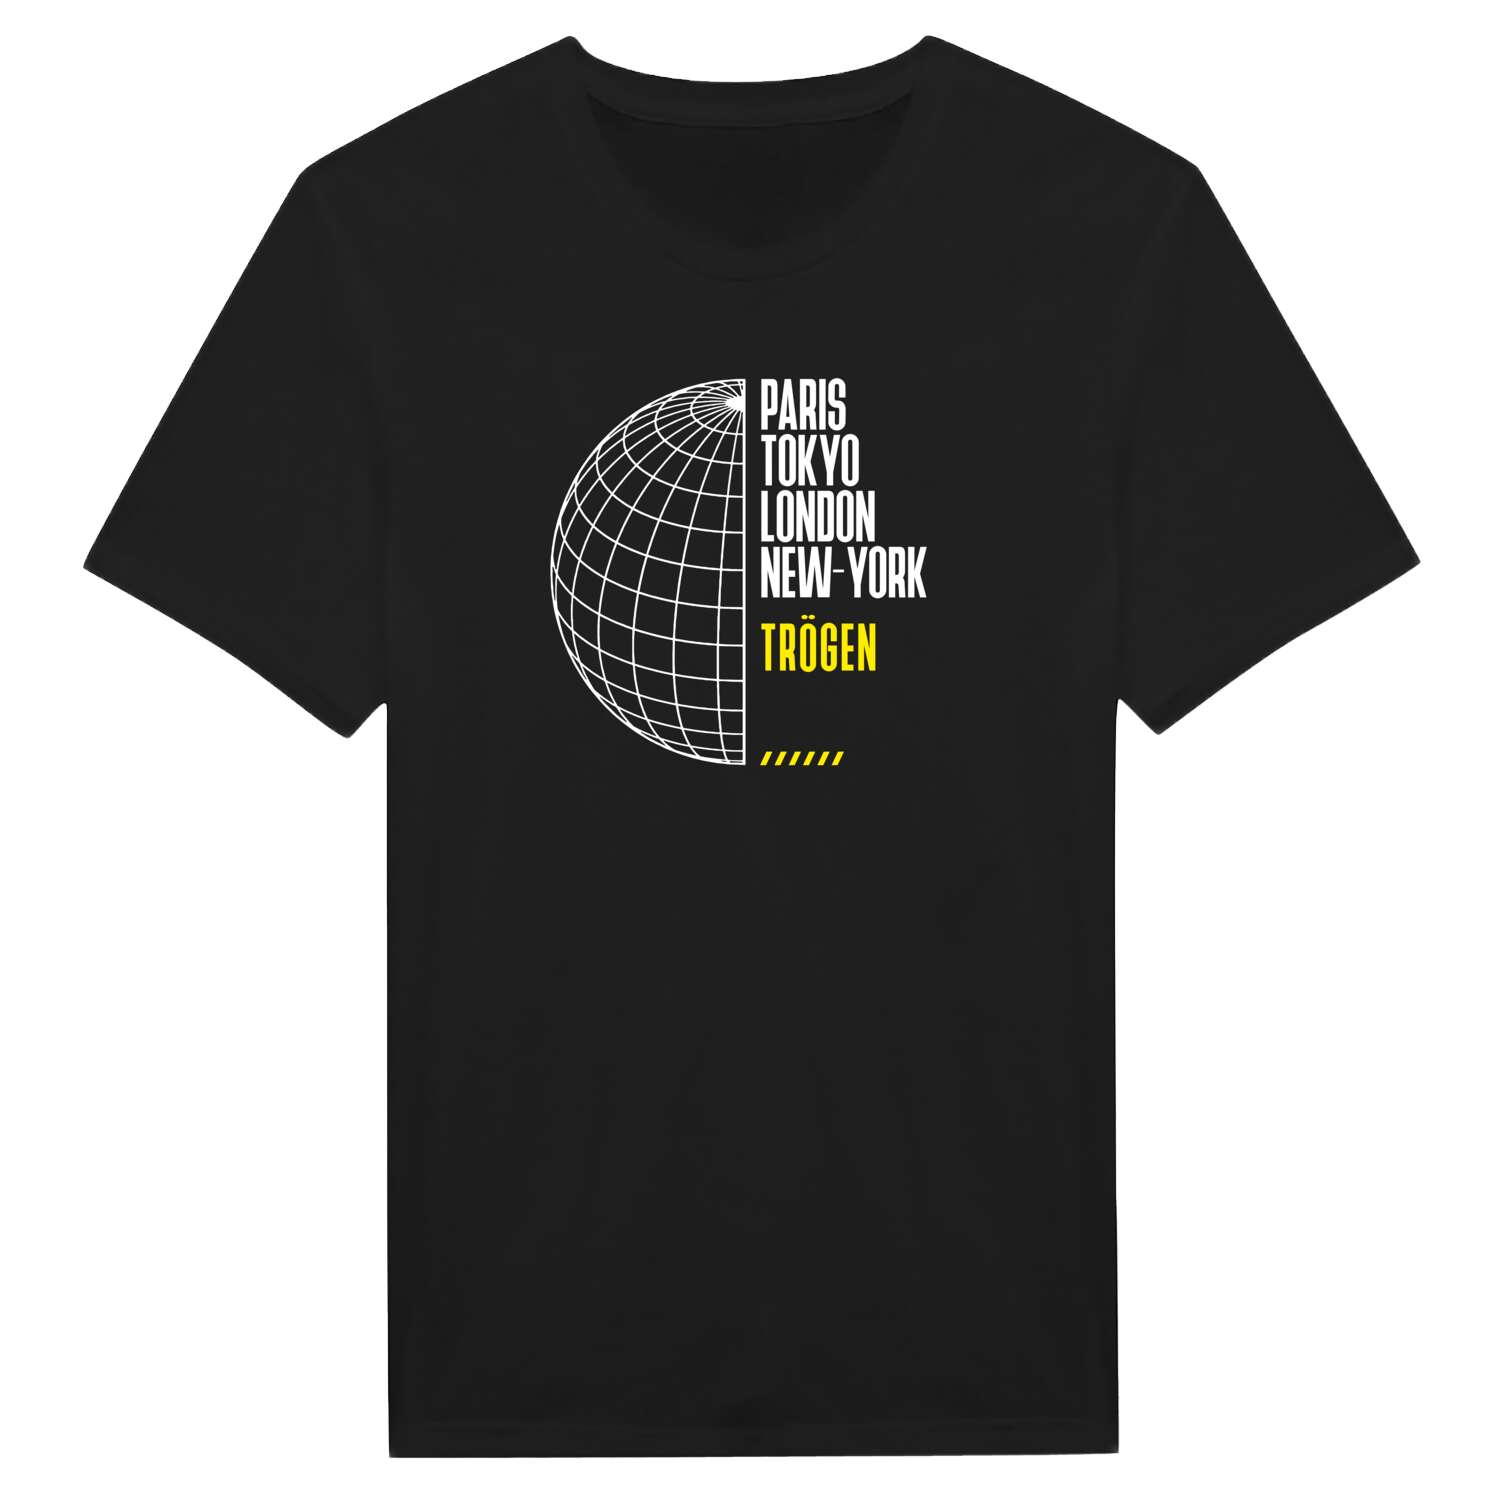 Trögen T-Shirt »Paris Tokyo London«